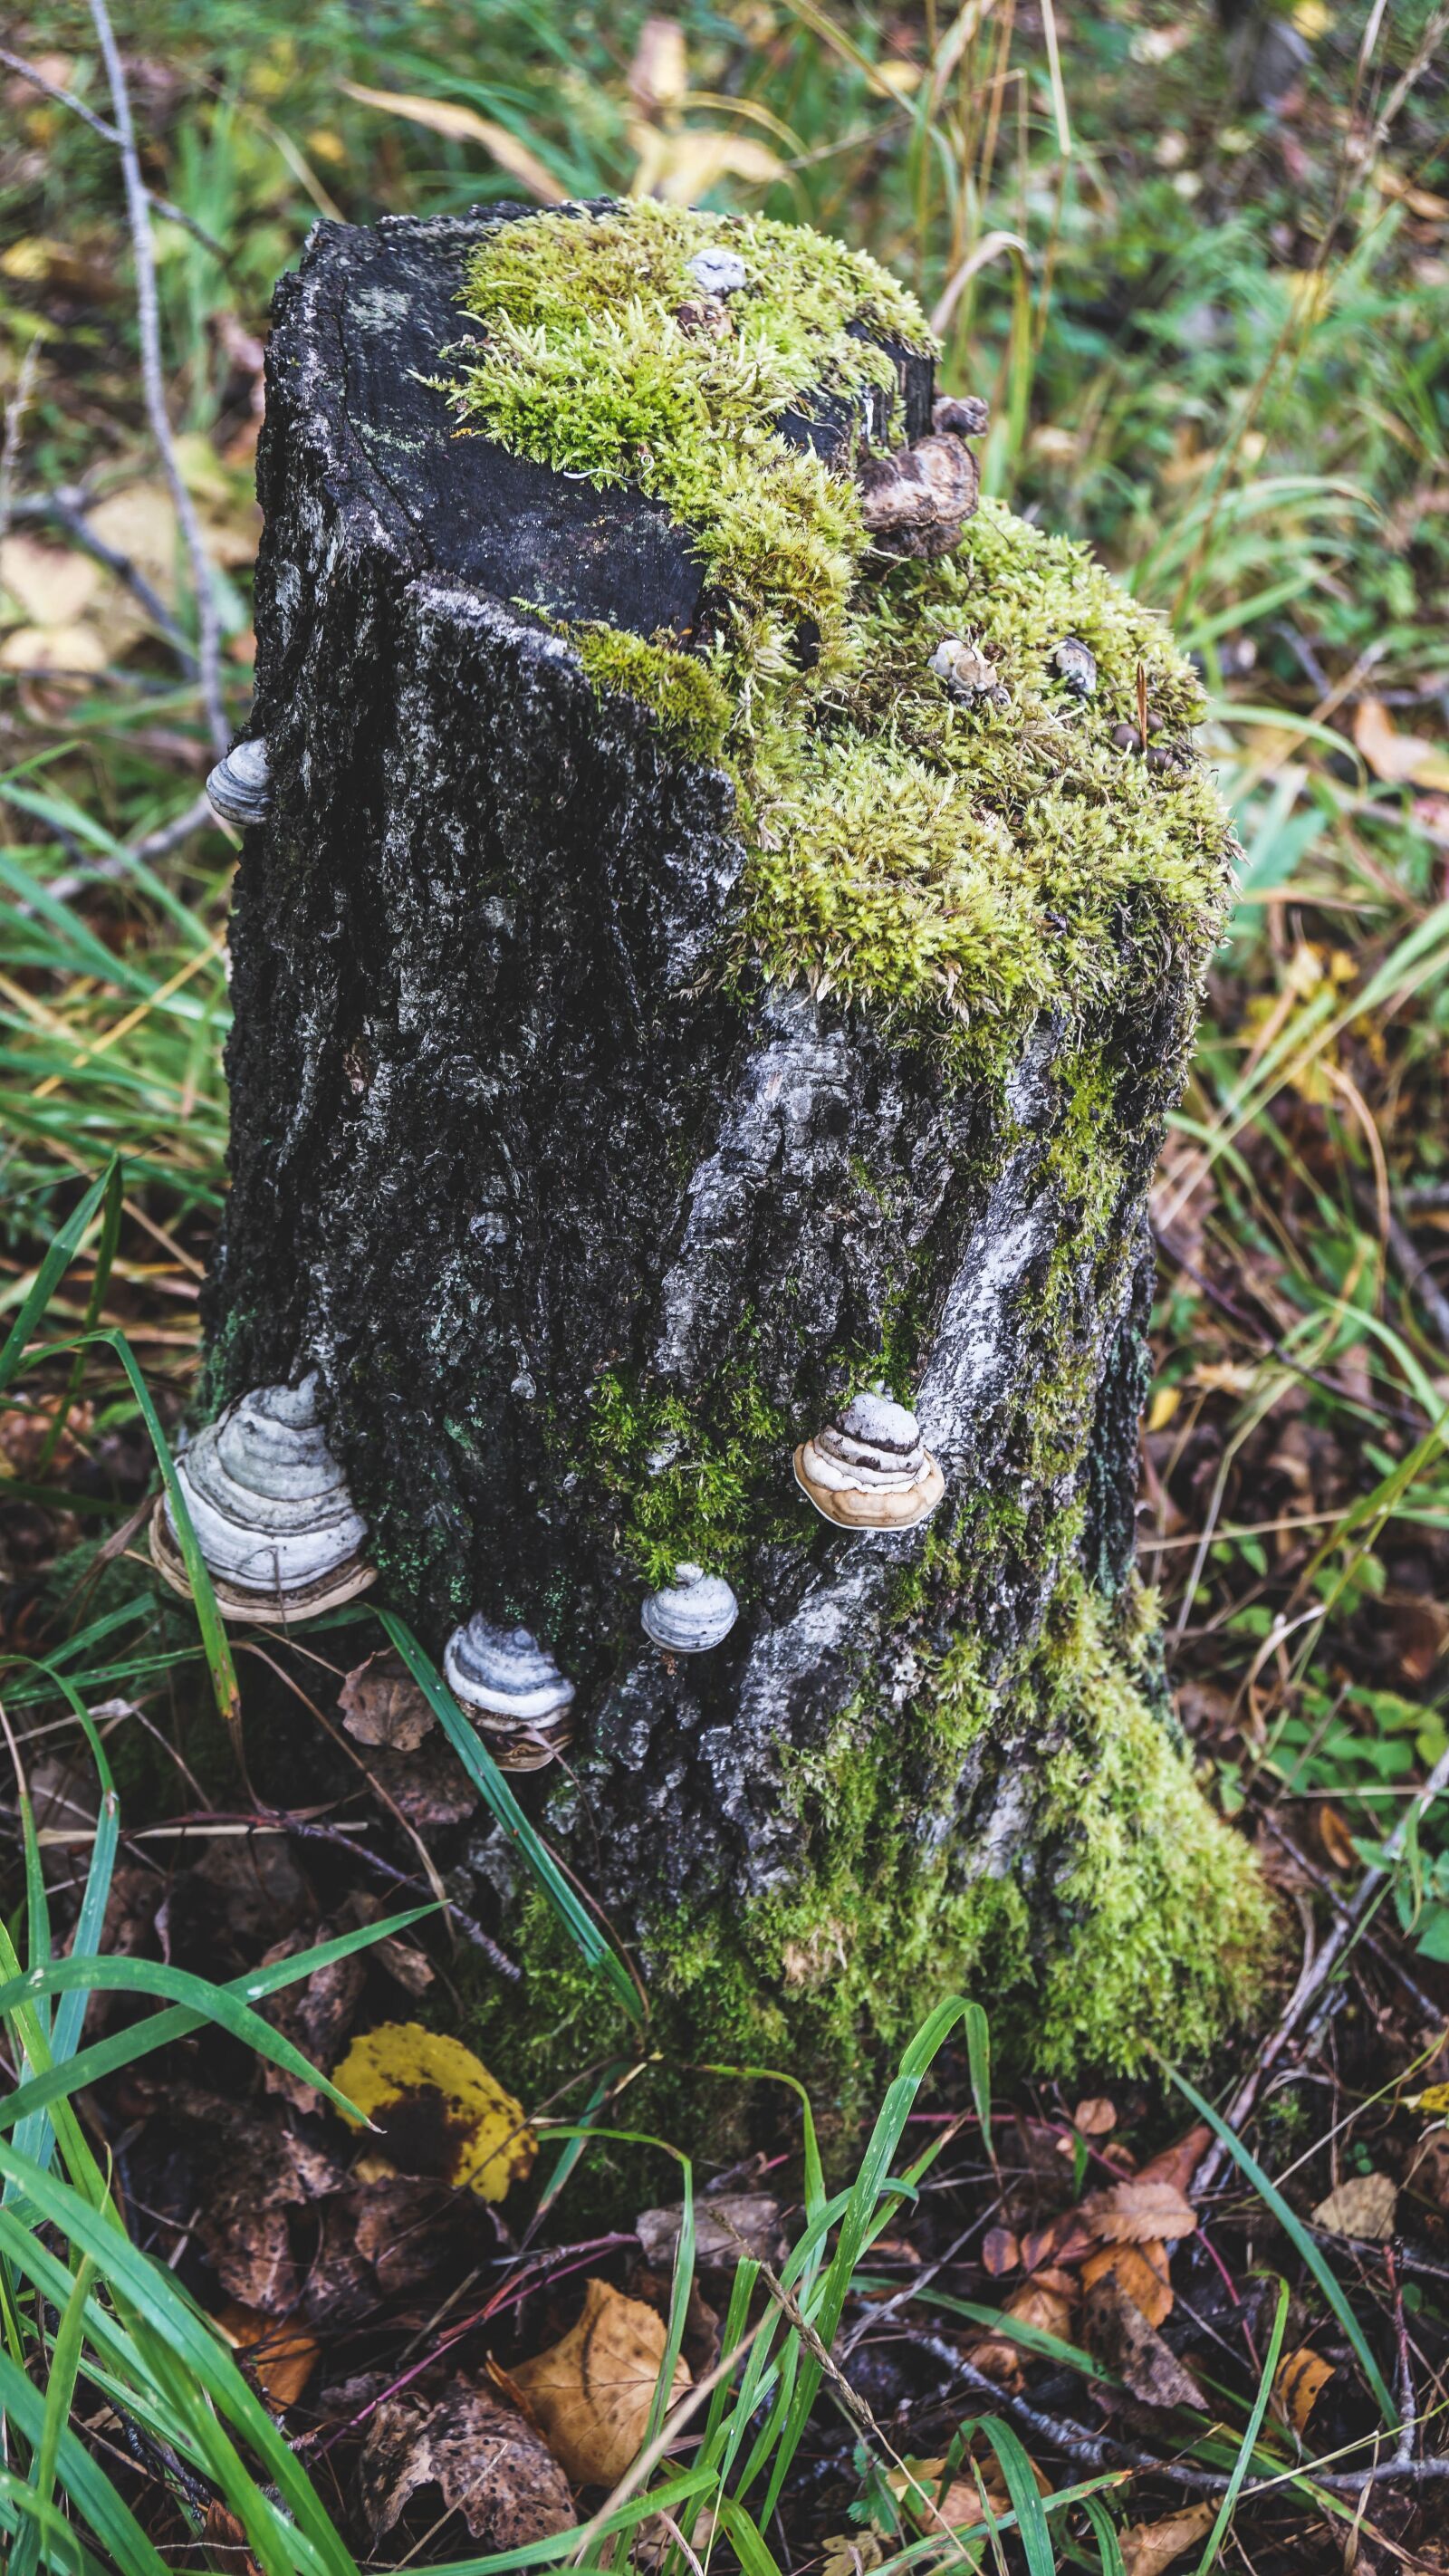 Sony Vario-Tessar T* E 16-70mm F4 ZA OSS sample photo. Tree stump, moss, forest photography